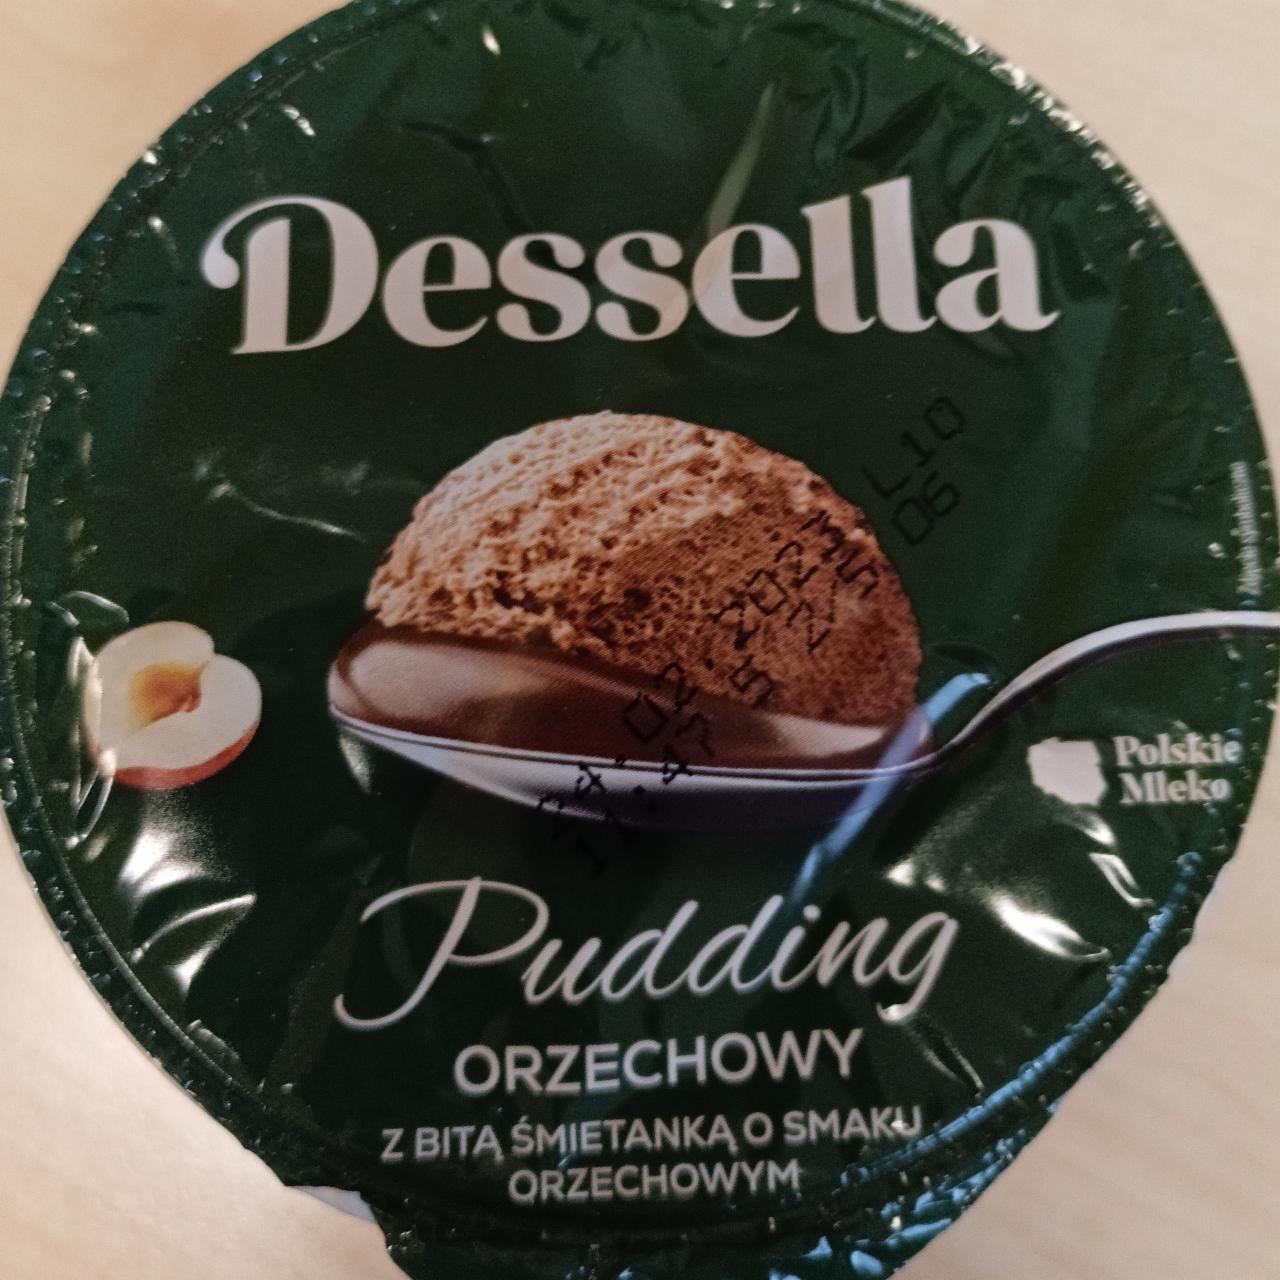 Fotografie - Pudding orzechowy z bitą śmietaną Dessella